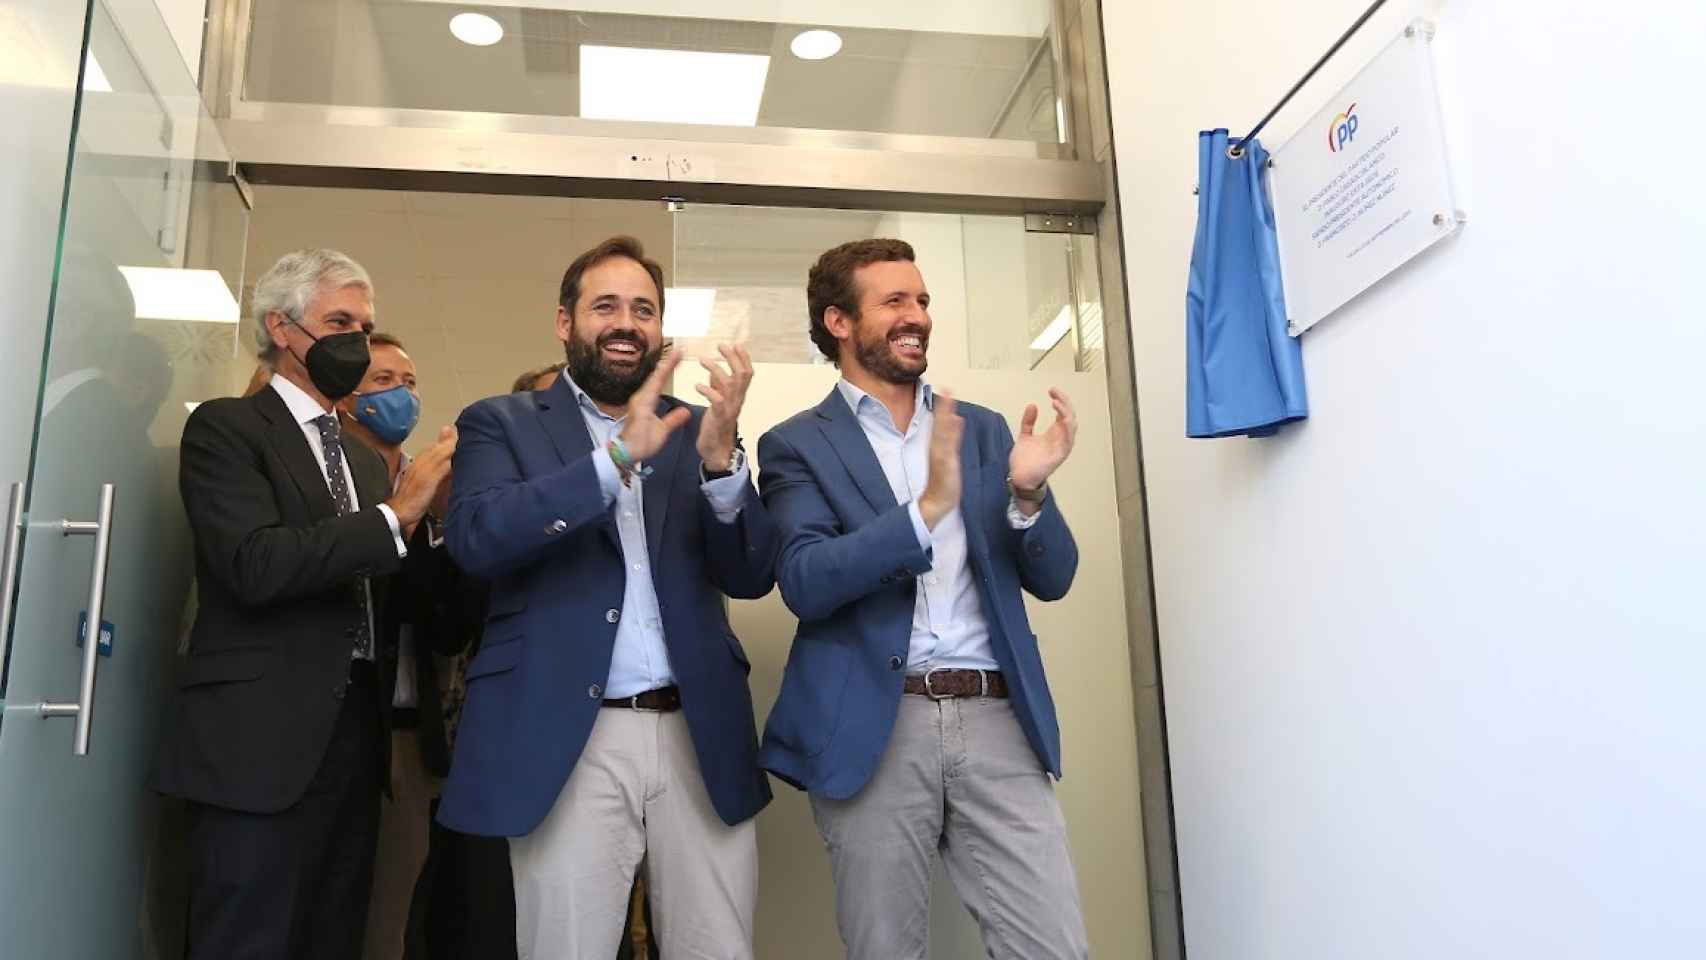 Suárez Illana, Núñez y Casado en una imagen de archivo de la inauguración de la nueva sede del PP CLM en Toledo.